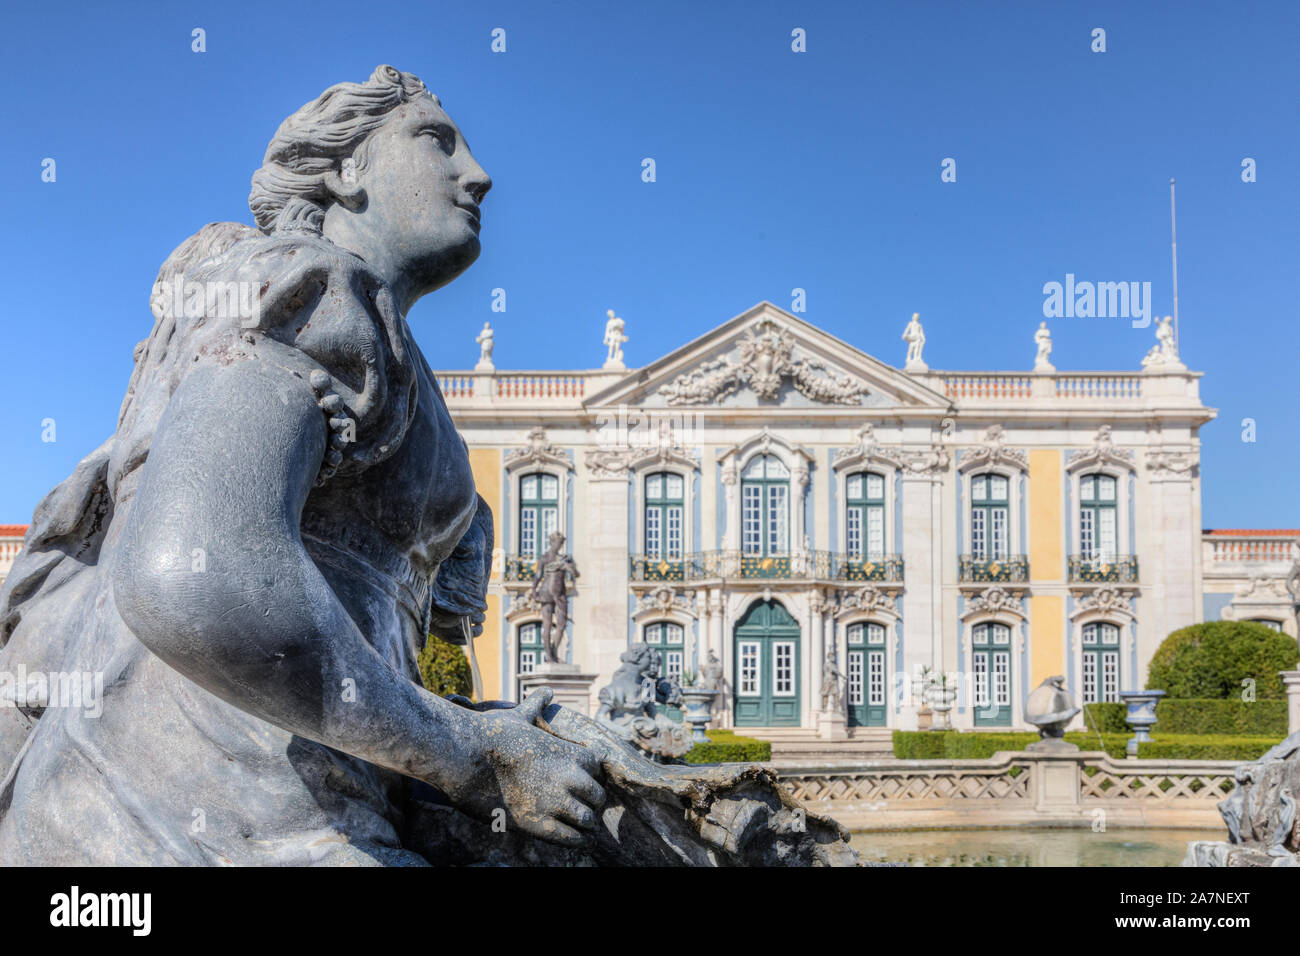 Palais de Queluz, Sintra, Lisbonne, Portugal, Europe Banque D'Images